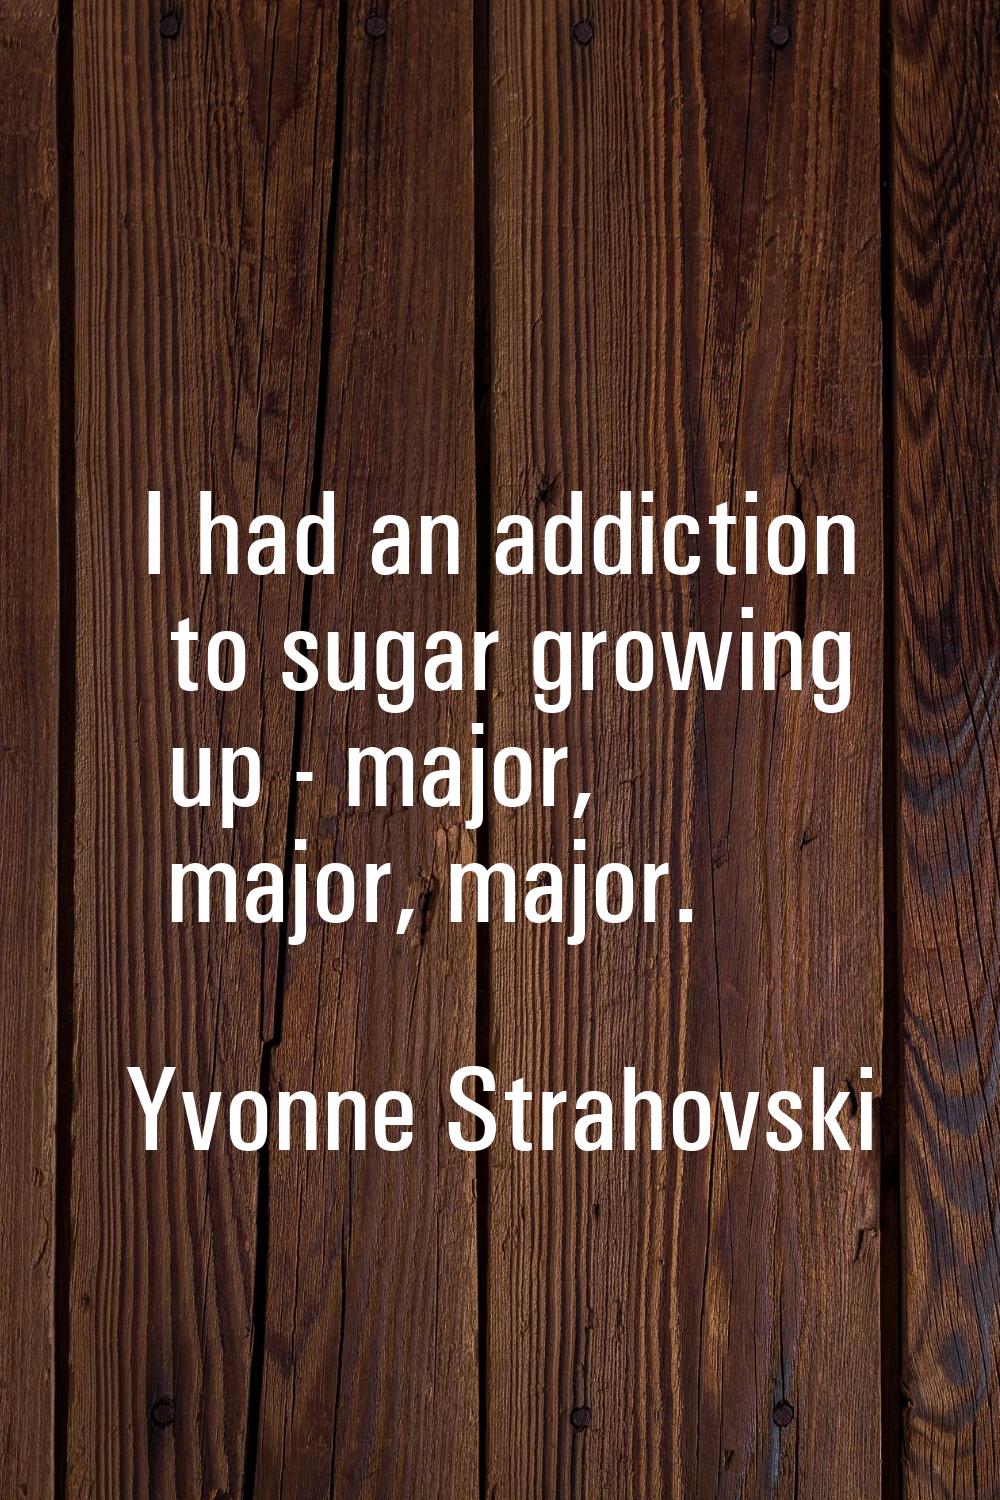 I had an addiction to sugar growing up - major, major, major.